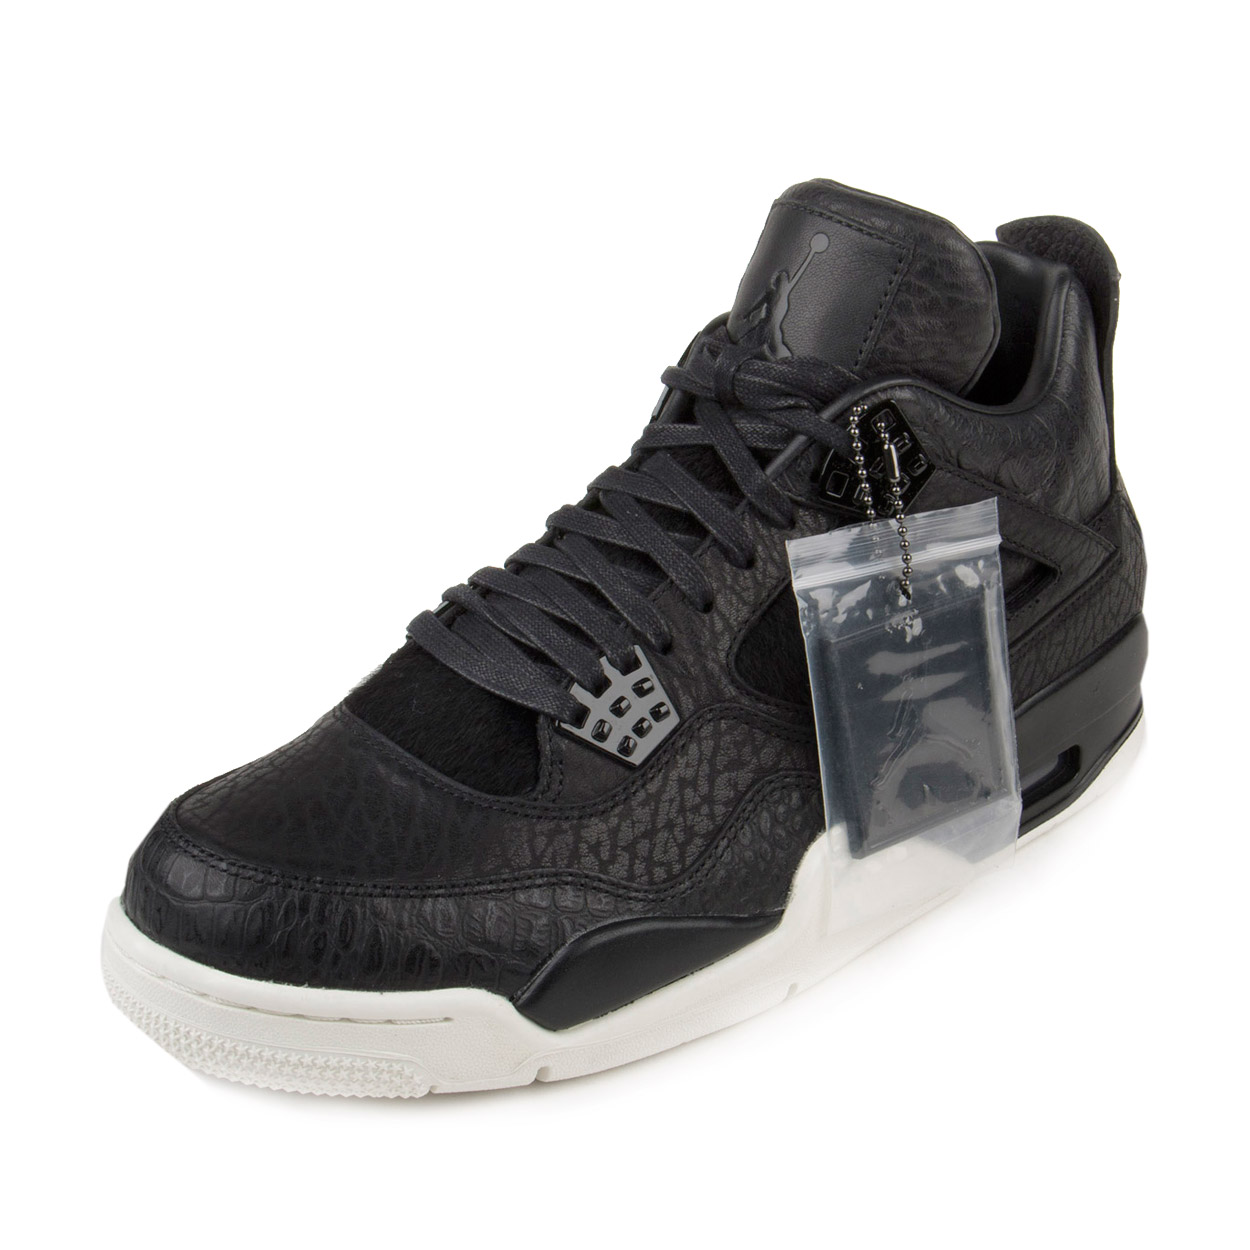 Nike Mens Air Jordan 4 Retro Premium "Pinnacle" Black/Sail 819139-010 - image 1 of 7